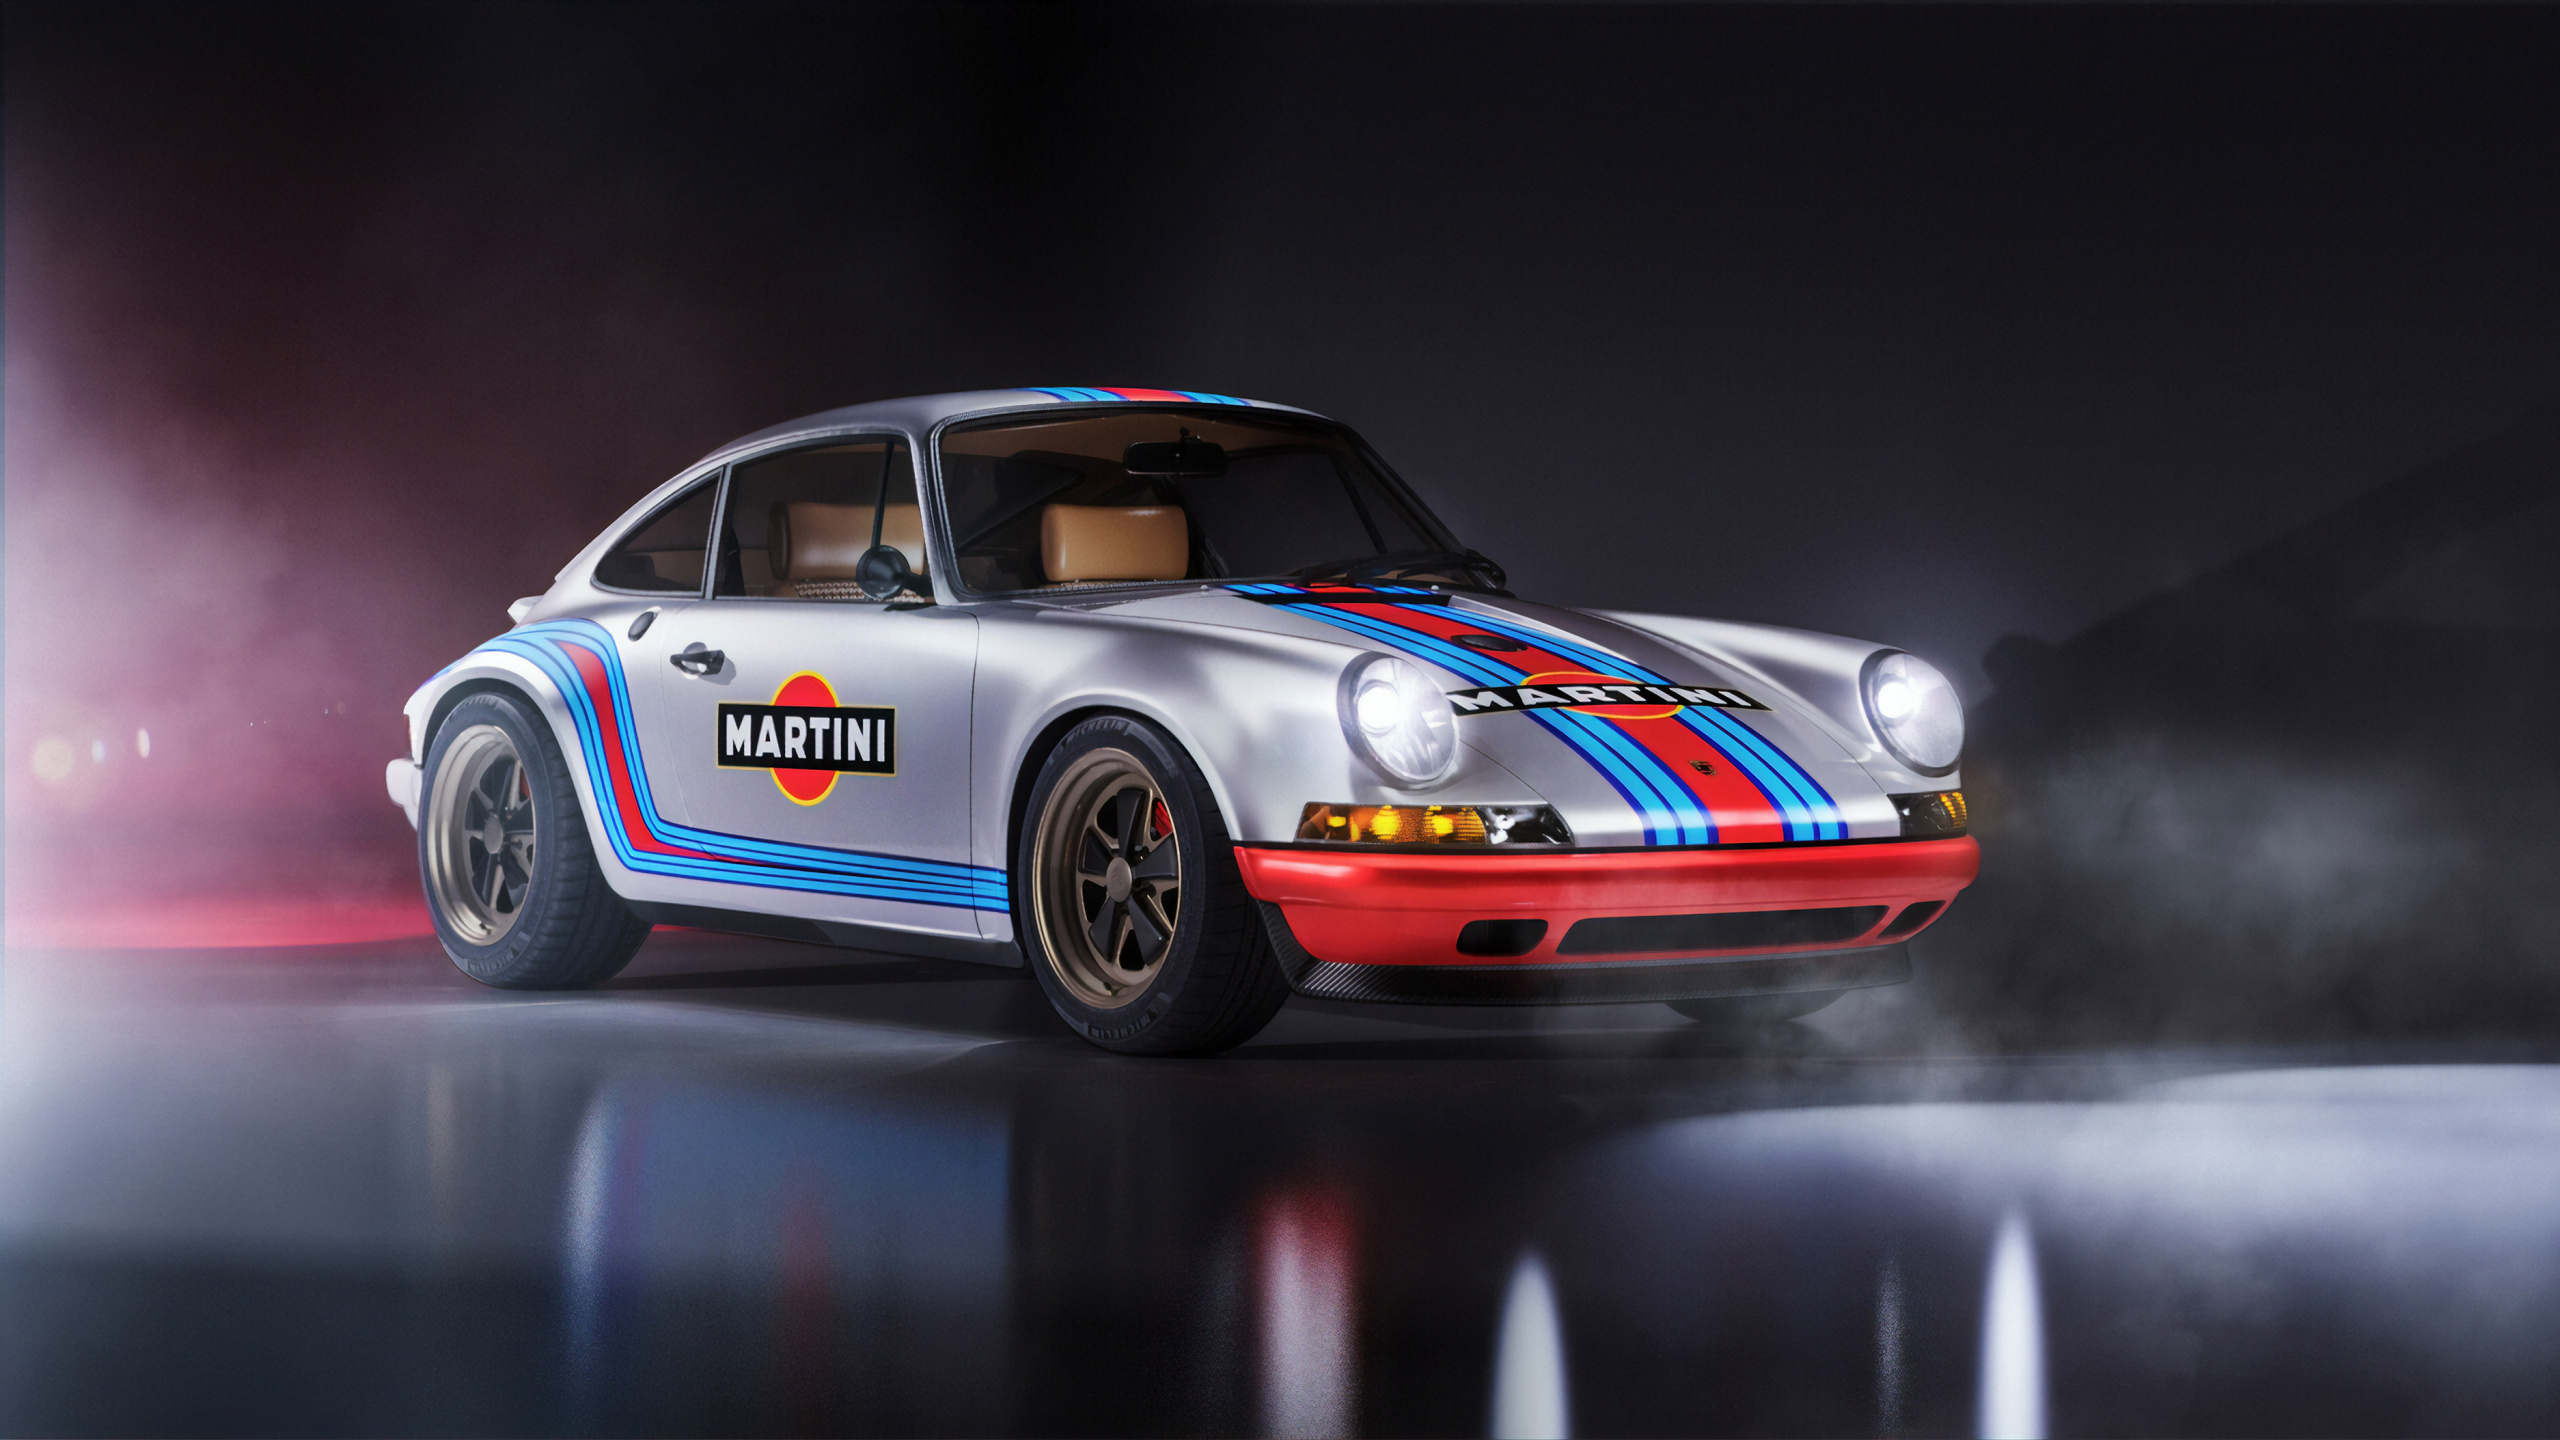 Roter Und Blauer Porsche 911. Wallpaper in 2560x1440 Resolution